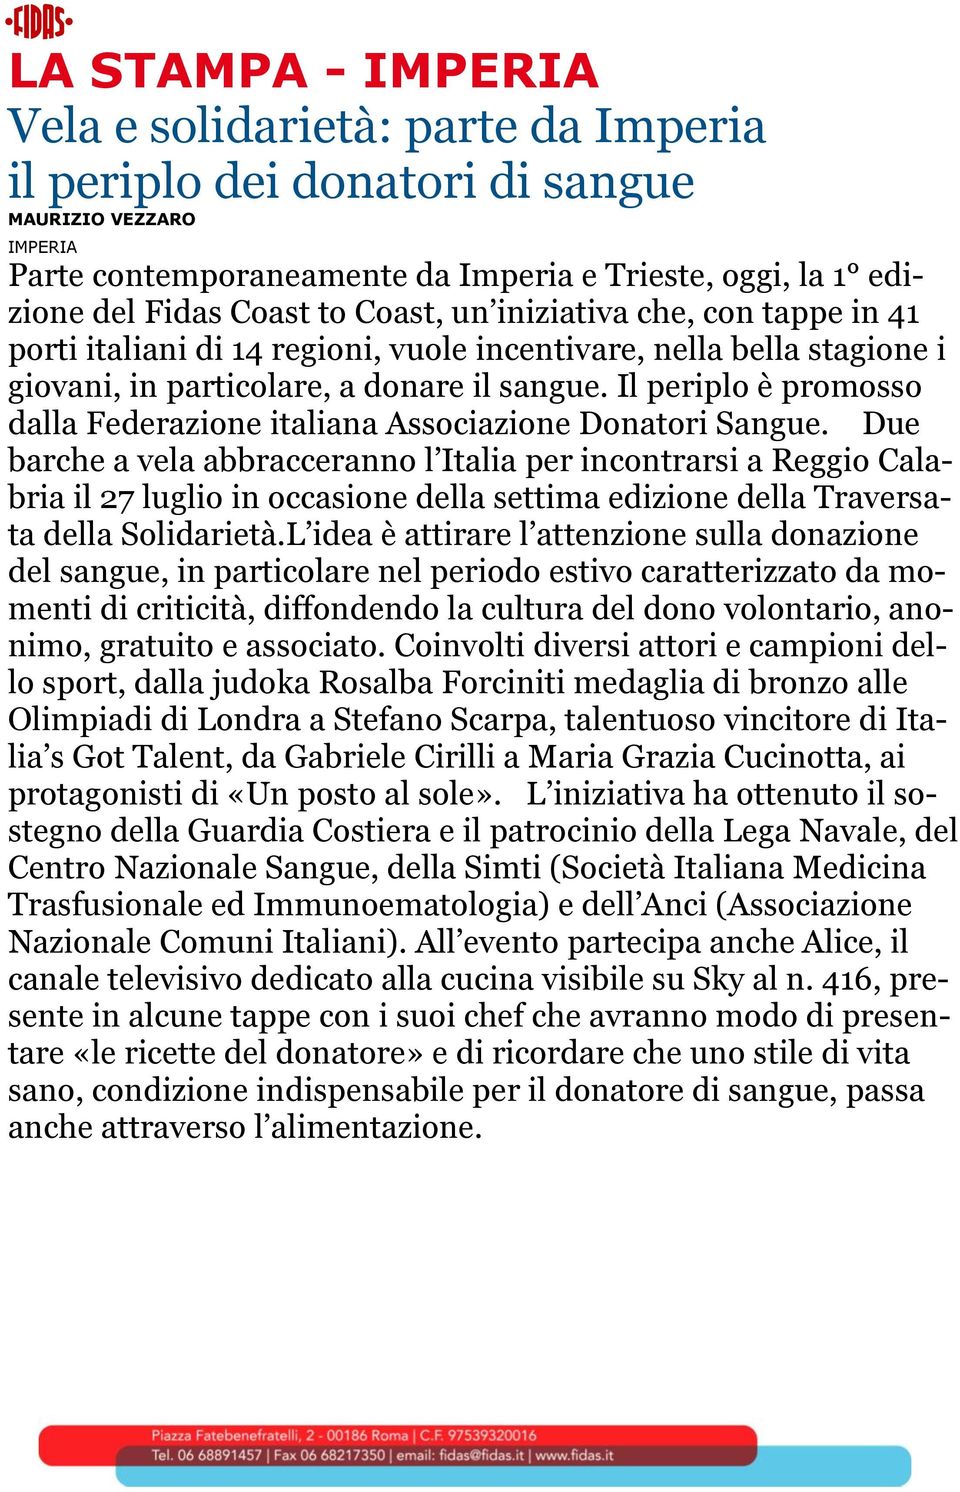 Il periplo è promosso dalla Federazione italiana Associazione Donatori Sangue.